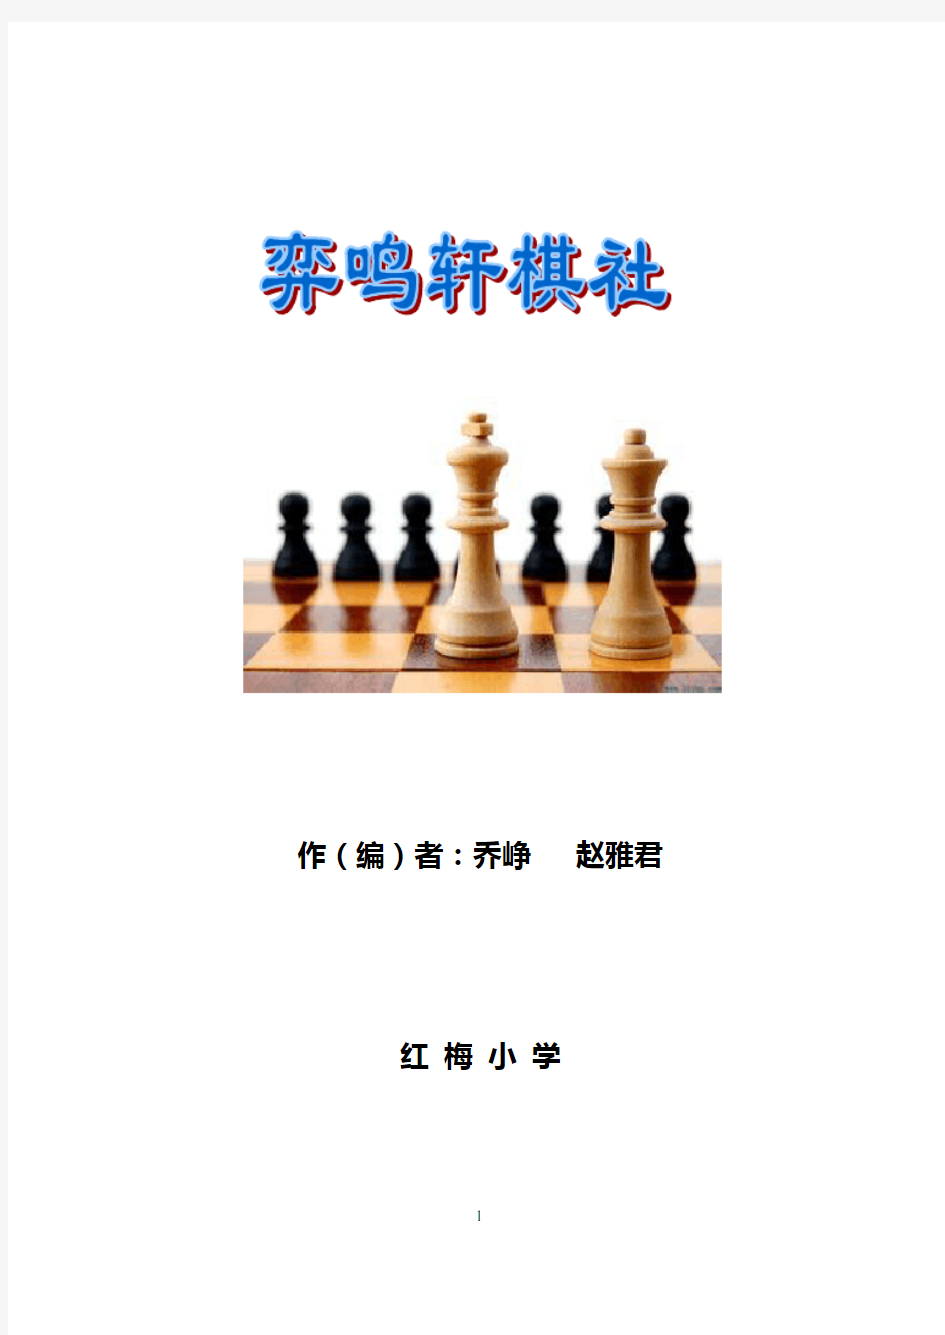 国际象棋校本课程